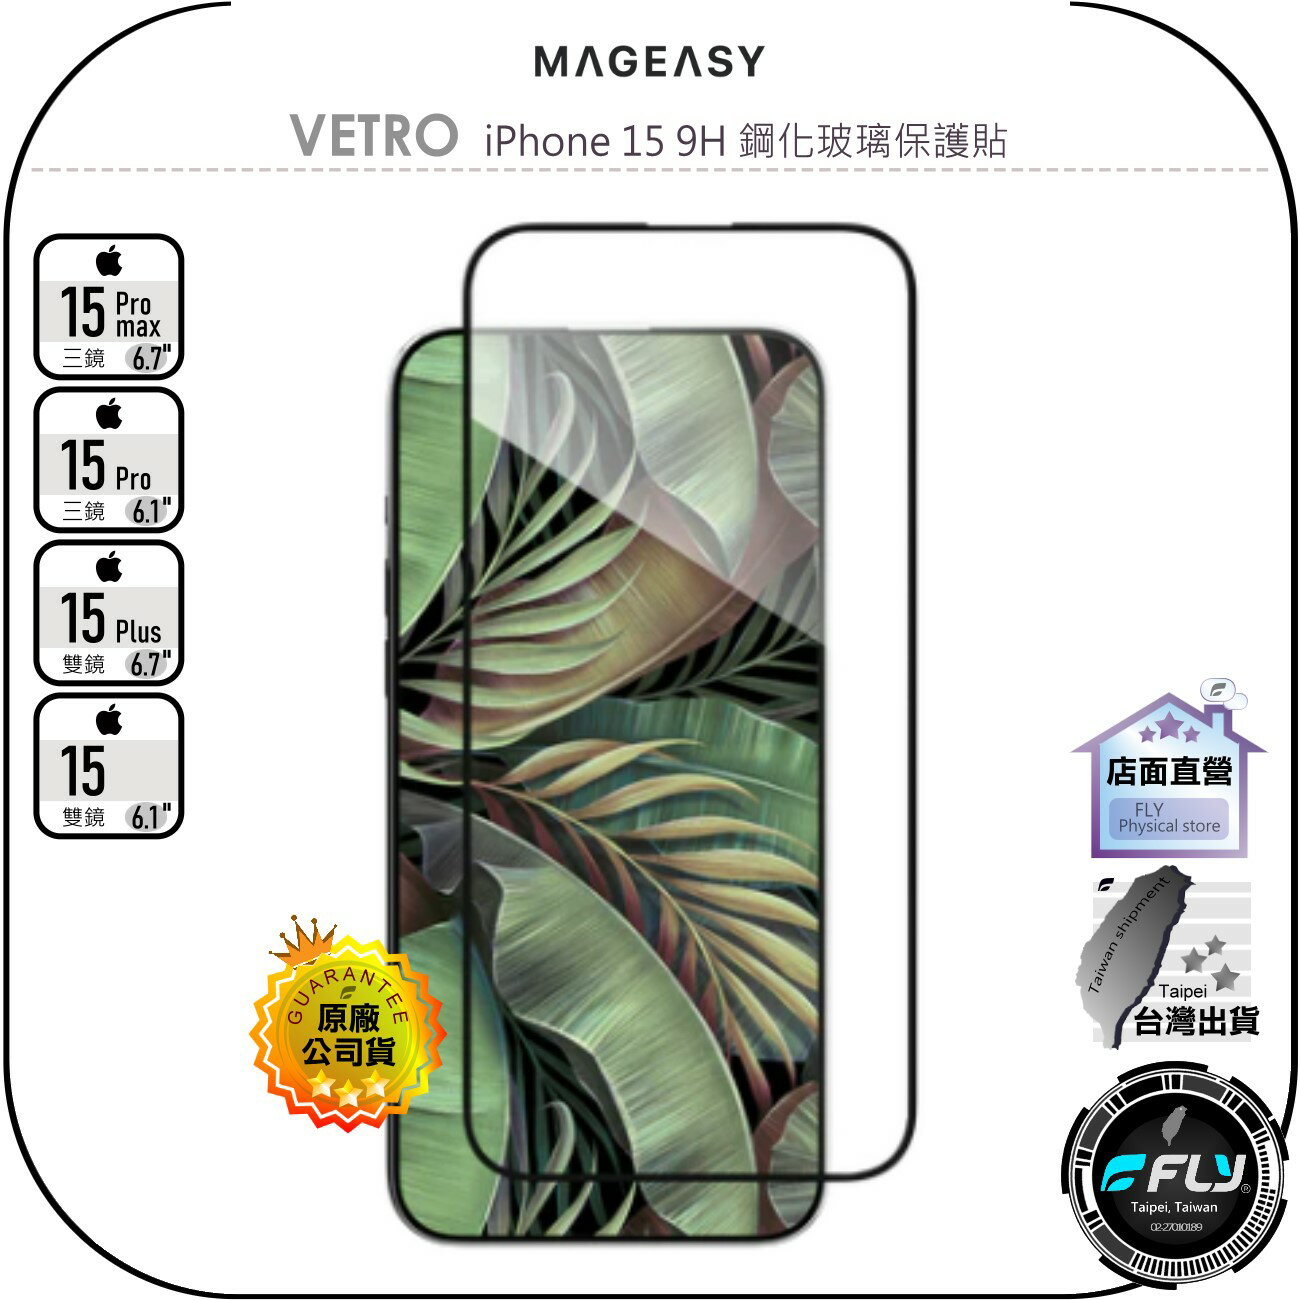 【飛翔商城】MAGEASY VETRO iPhone 15 9H 鋼化玻璃保護貼◉公司貨◉Pro Max Plus